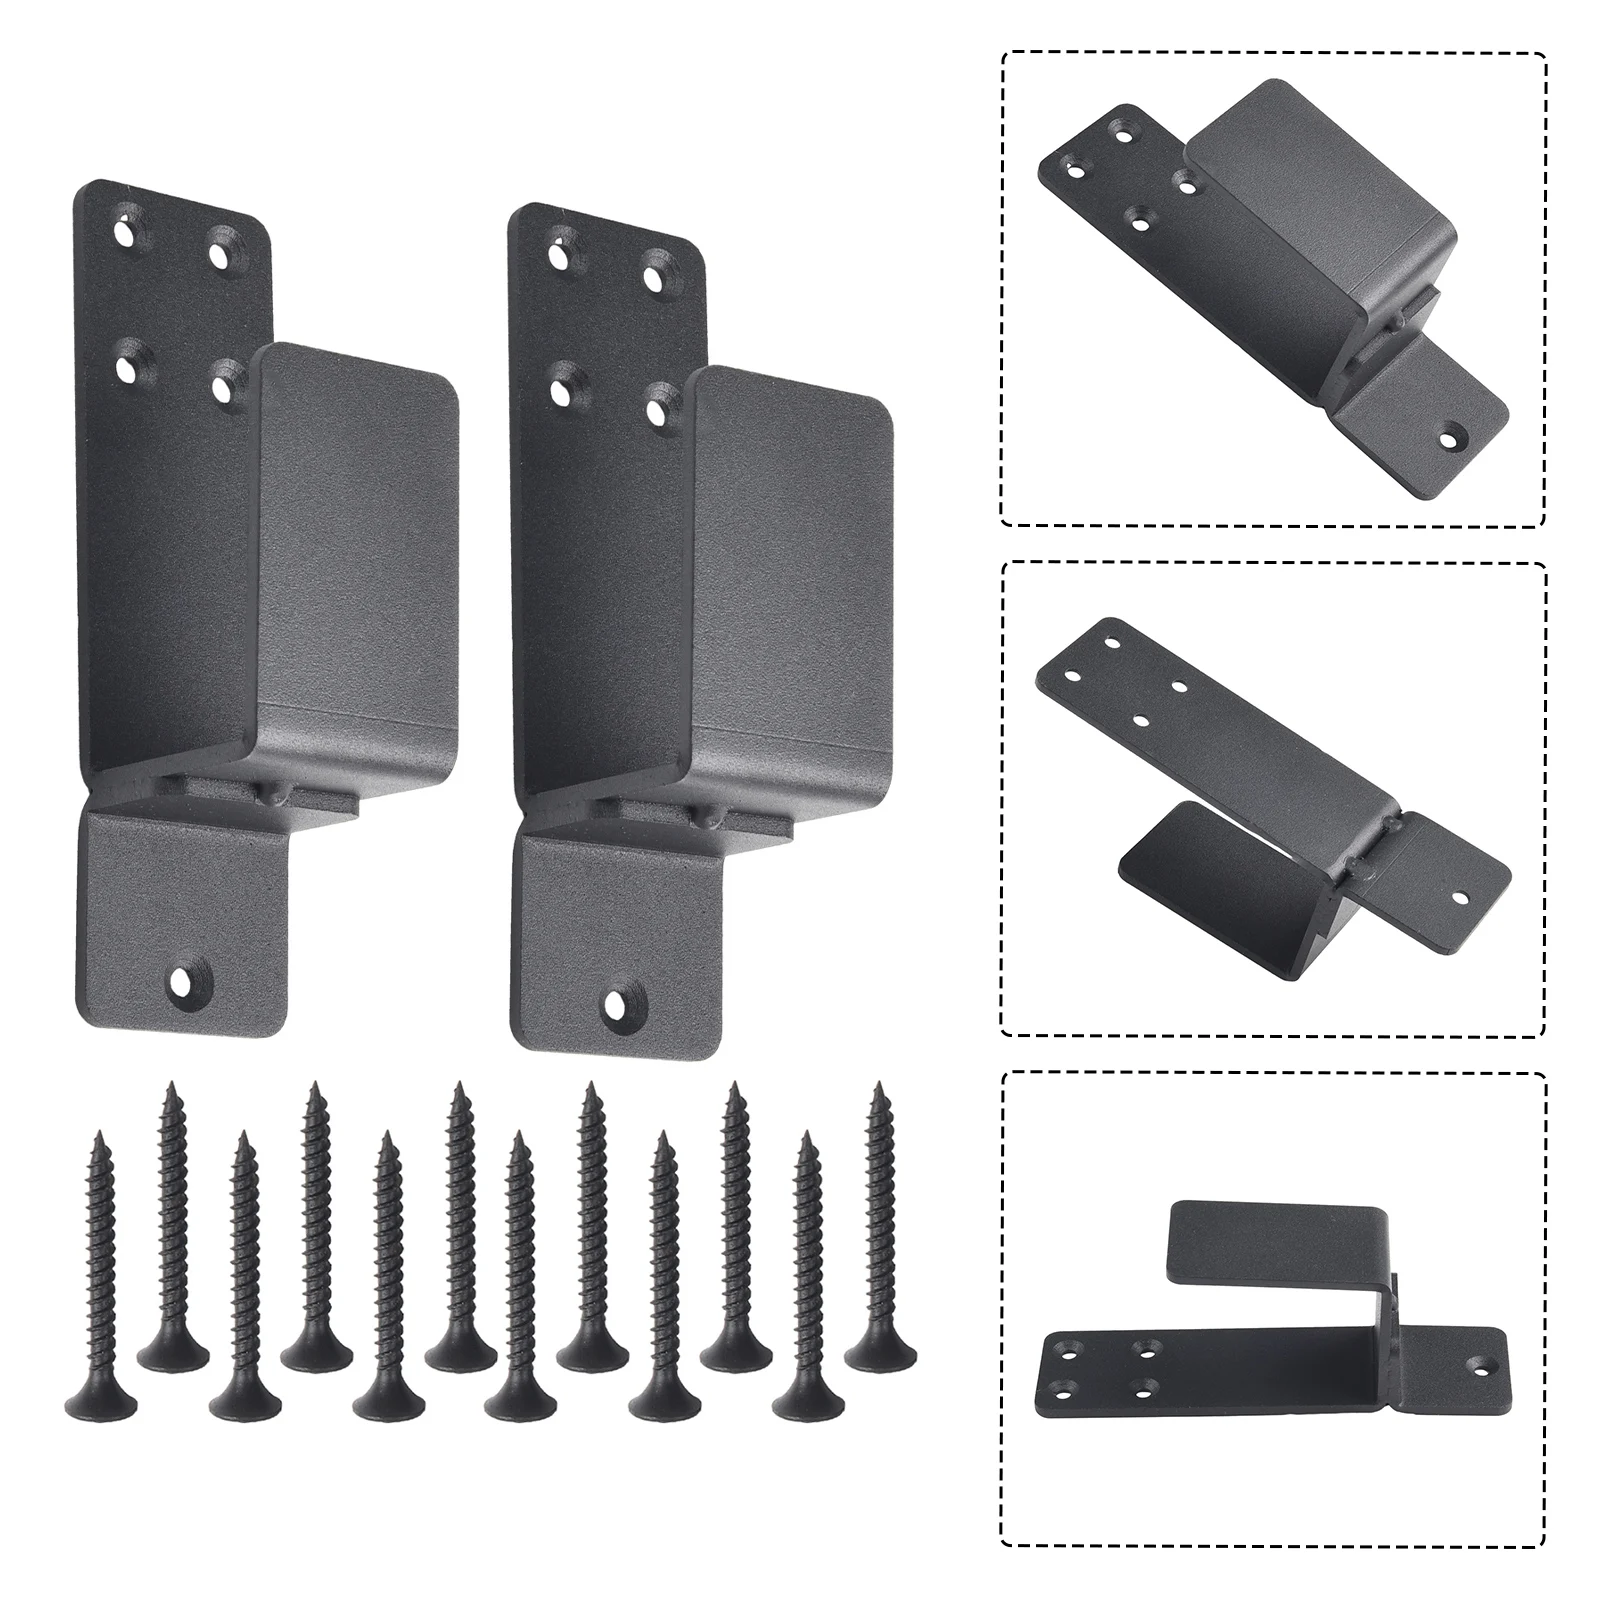 Door Barricade Brackets Alloy Steel Upgrade Door Barricade Security Bar U-Shaped Design For 2x4 LUMBER Home Hardware